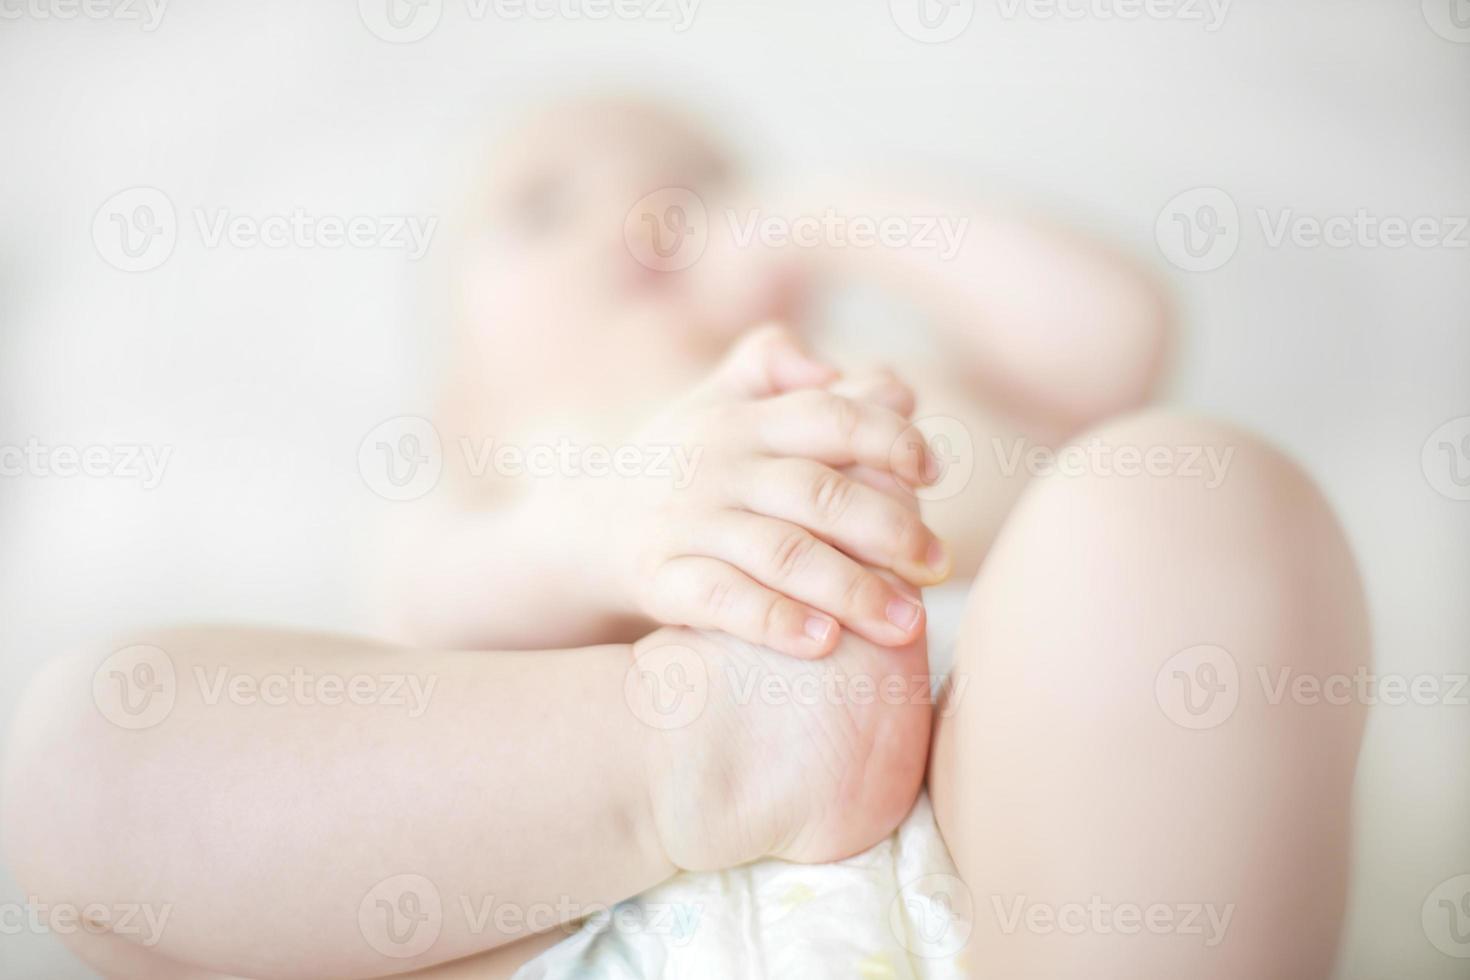 piccoli piedi della neonata sul letto foto